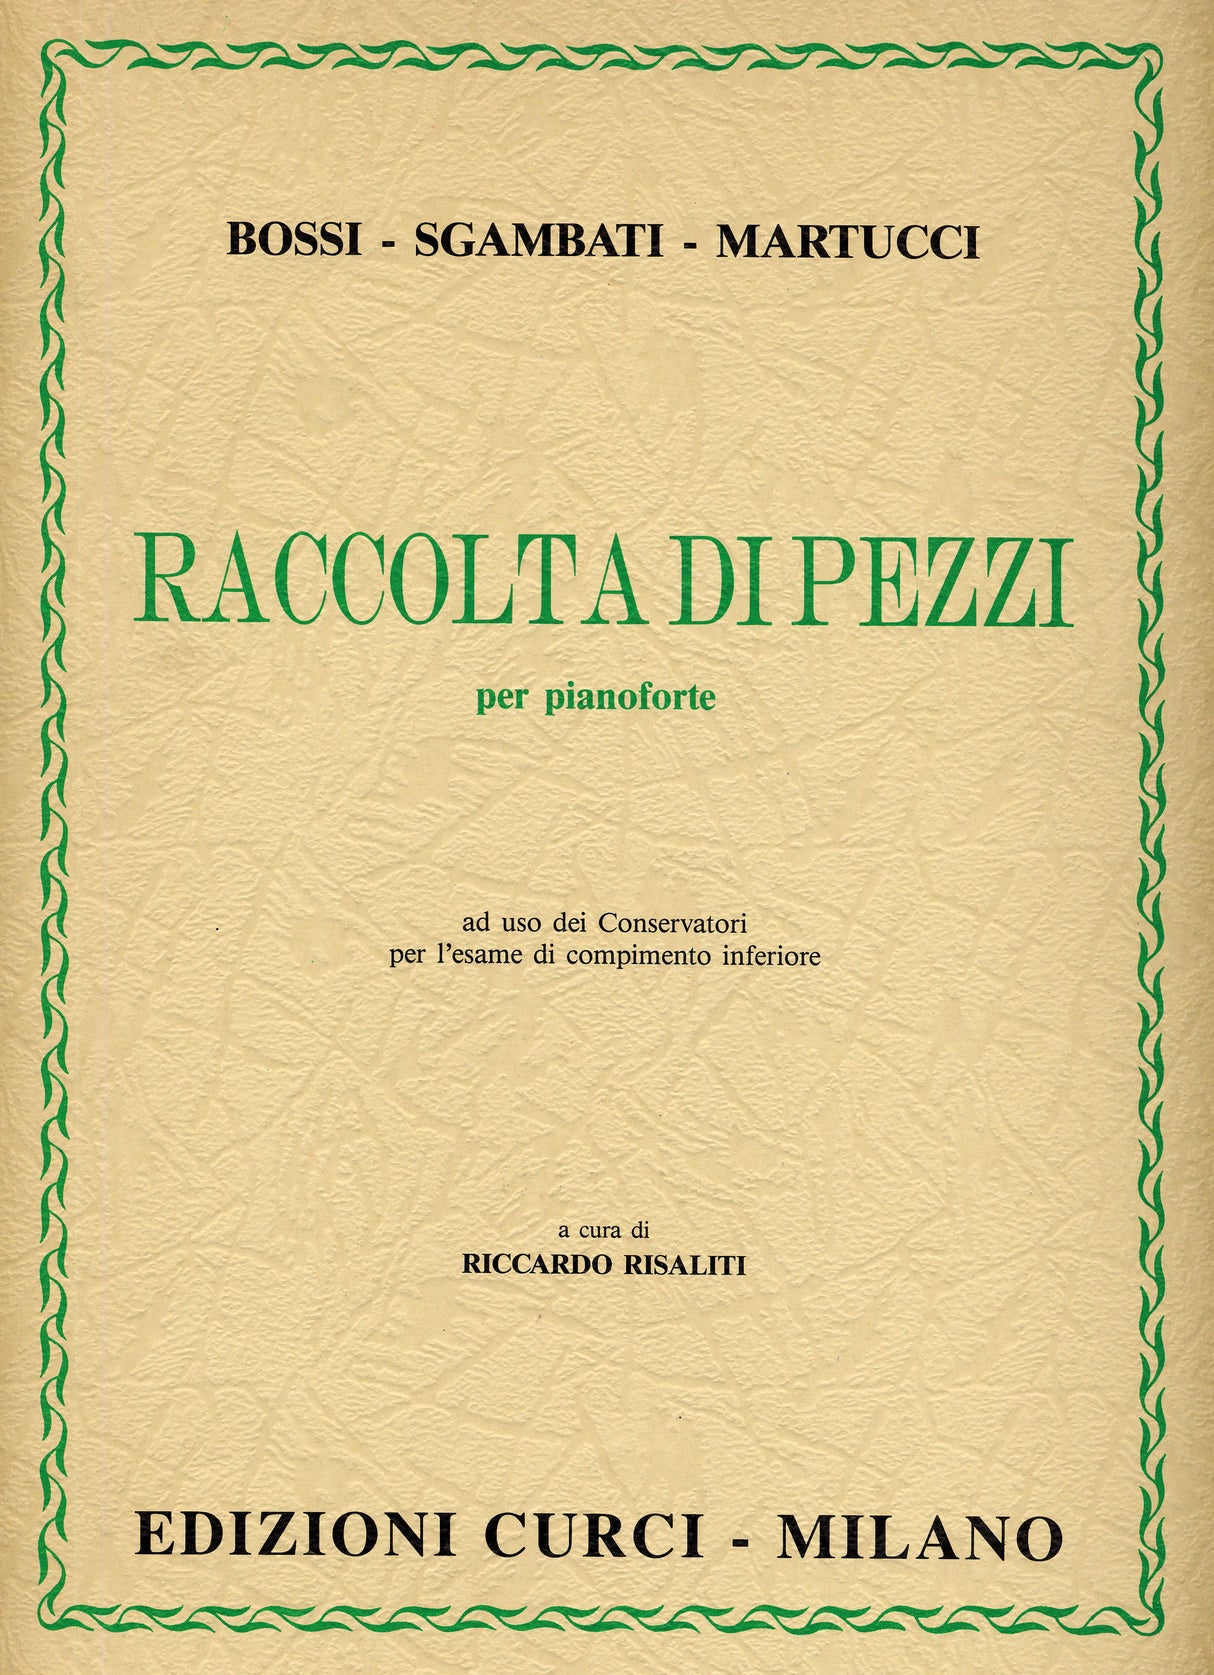 Piano Works by Sgambati, Martucci, & Bossi